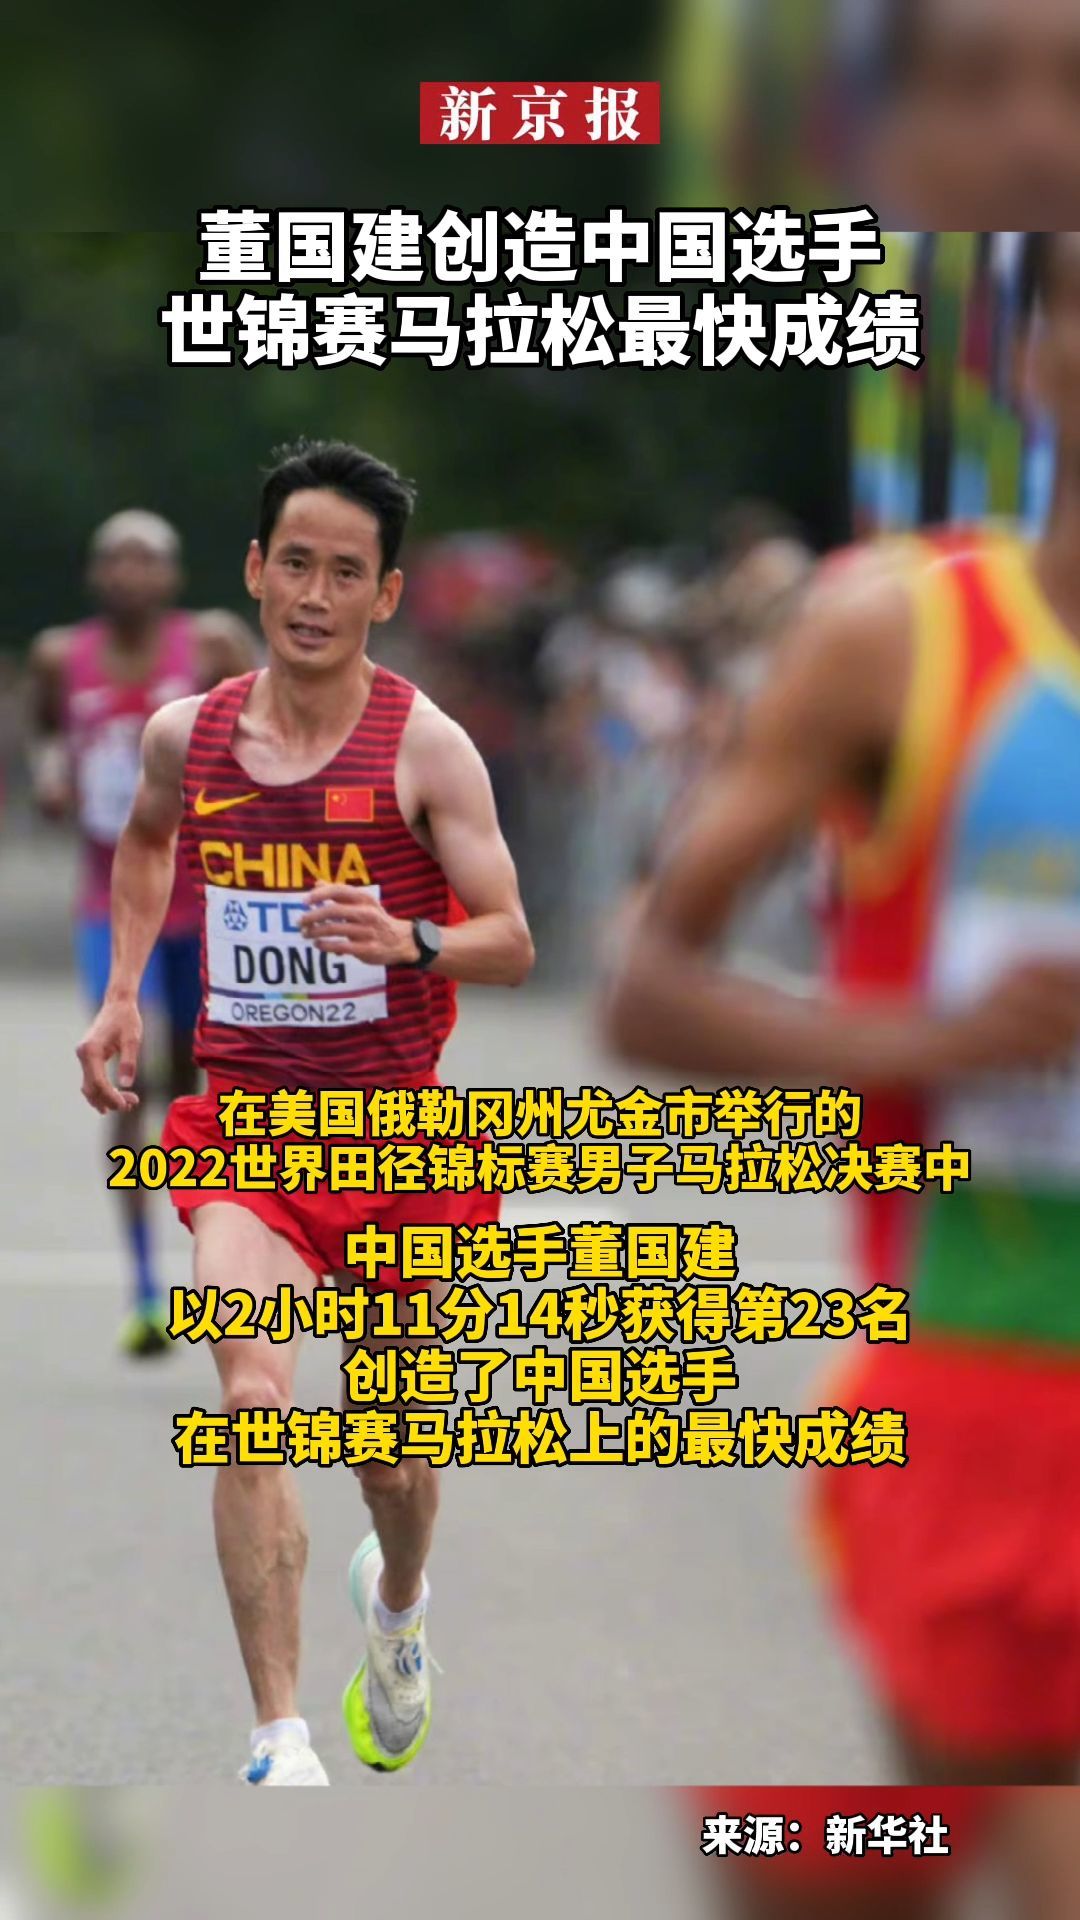 #董国建创造中国选手世锦赛马拉松最快成绩